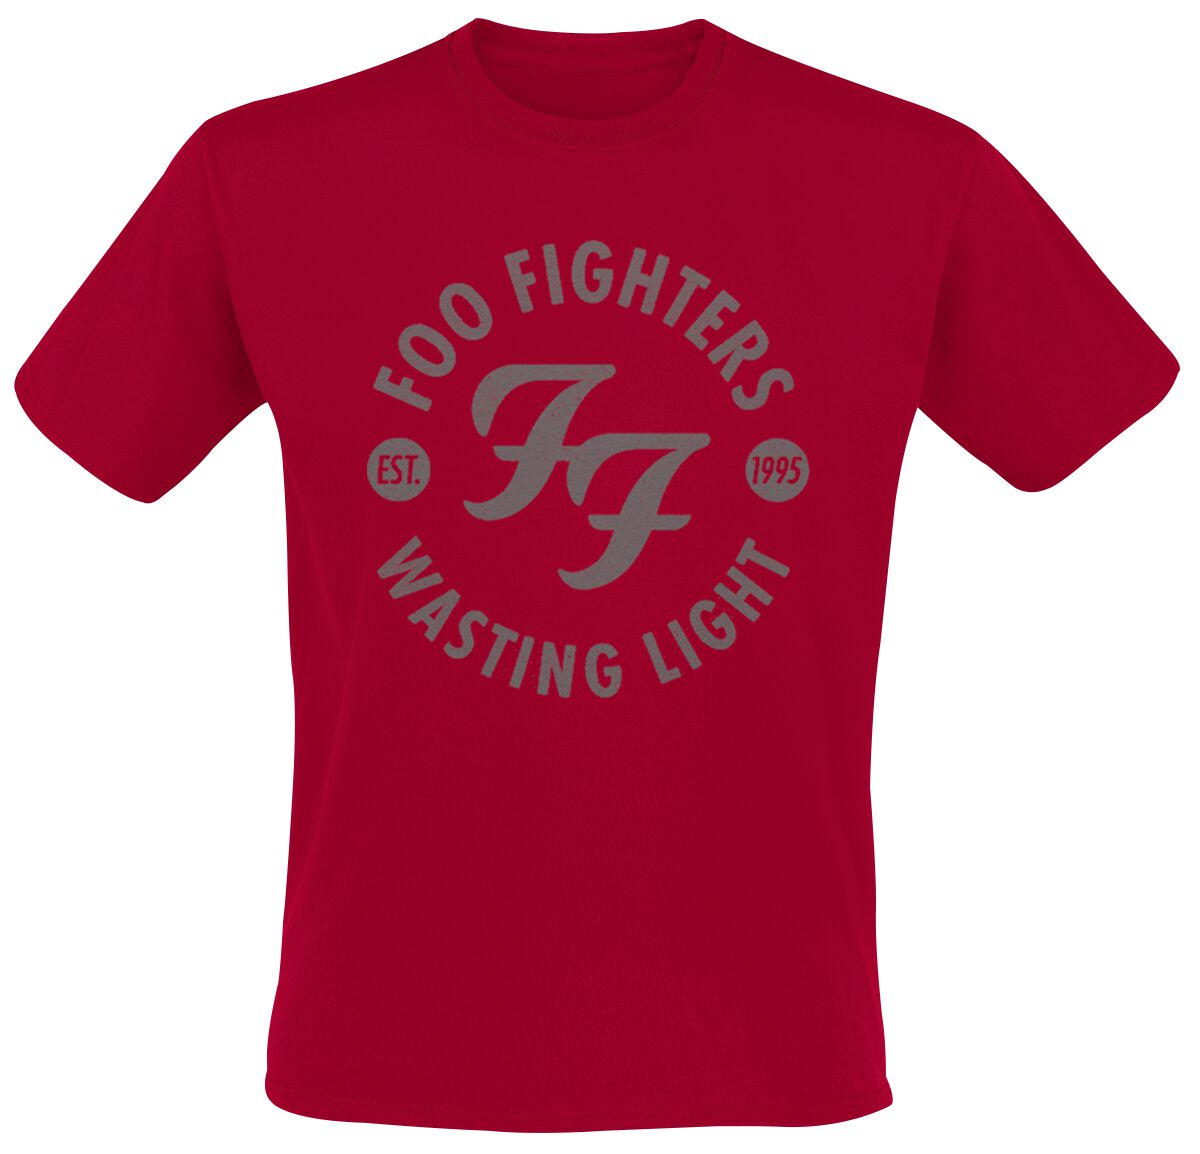 Foo Fighters T-Shirt - Wasting Light - S bis XXL - für Männer - Größe XL - rot  - Lizenziertes Merchandise!